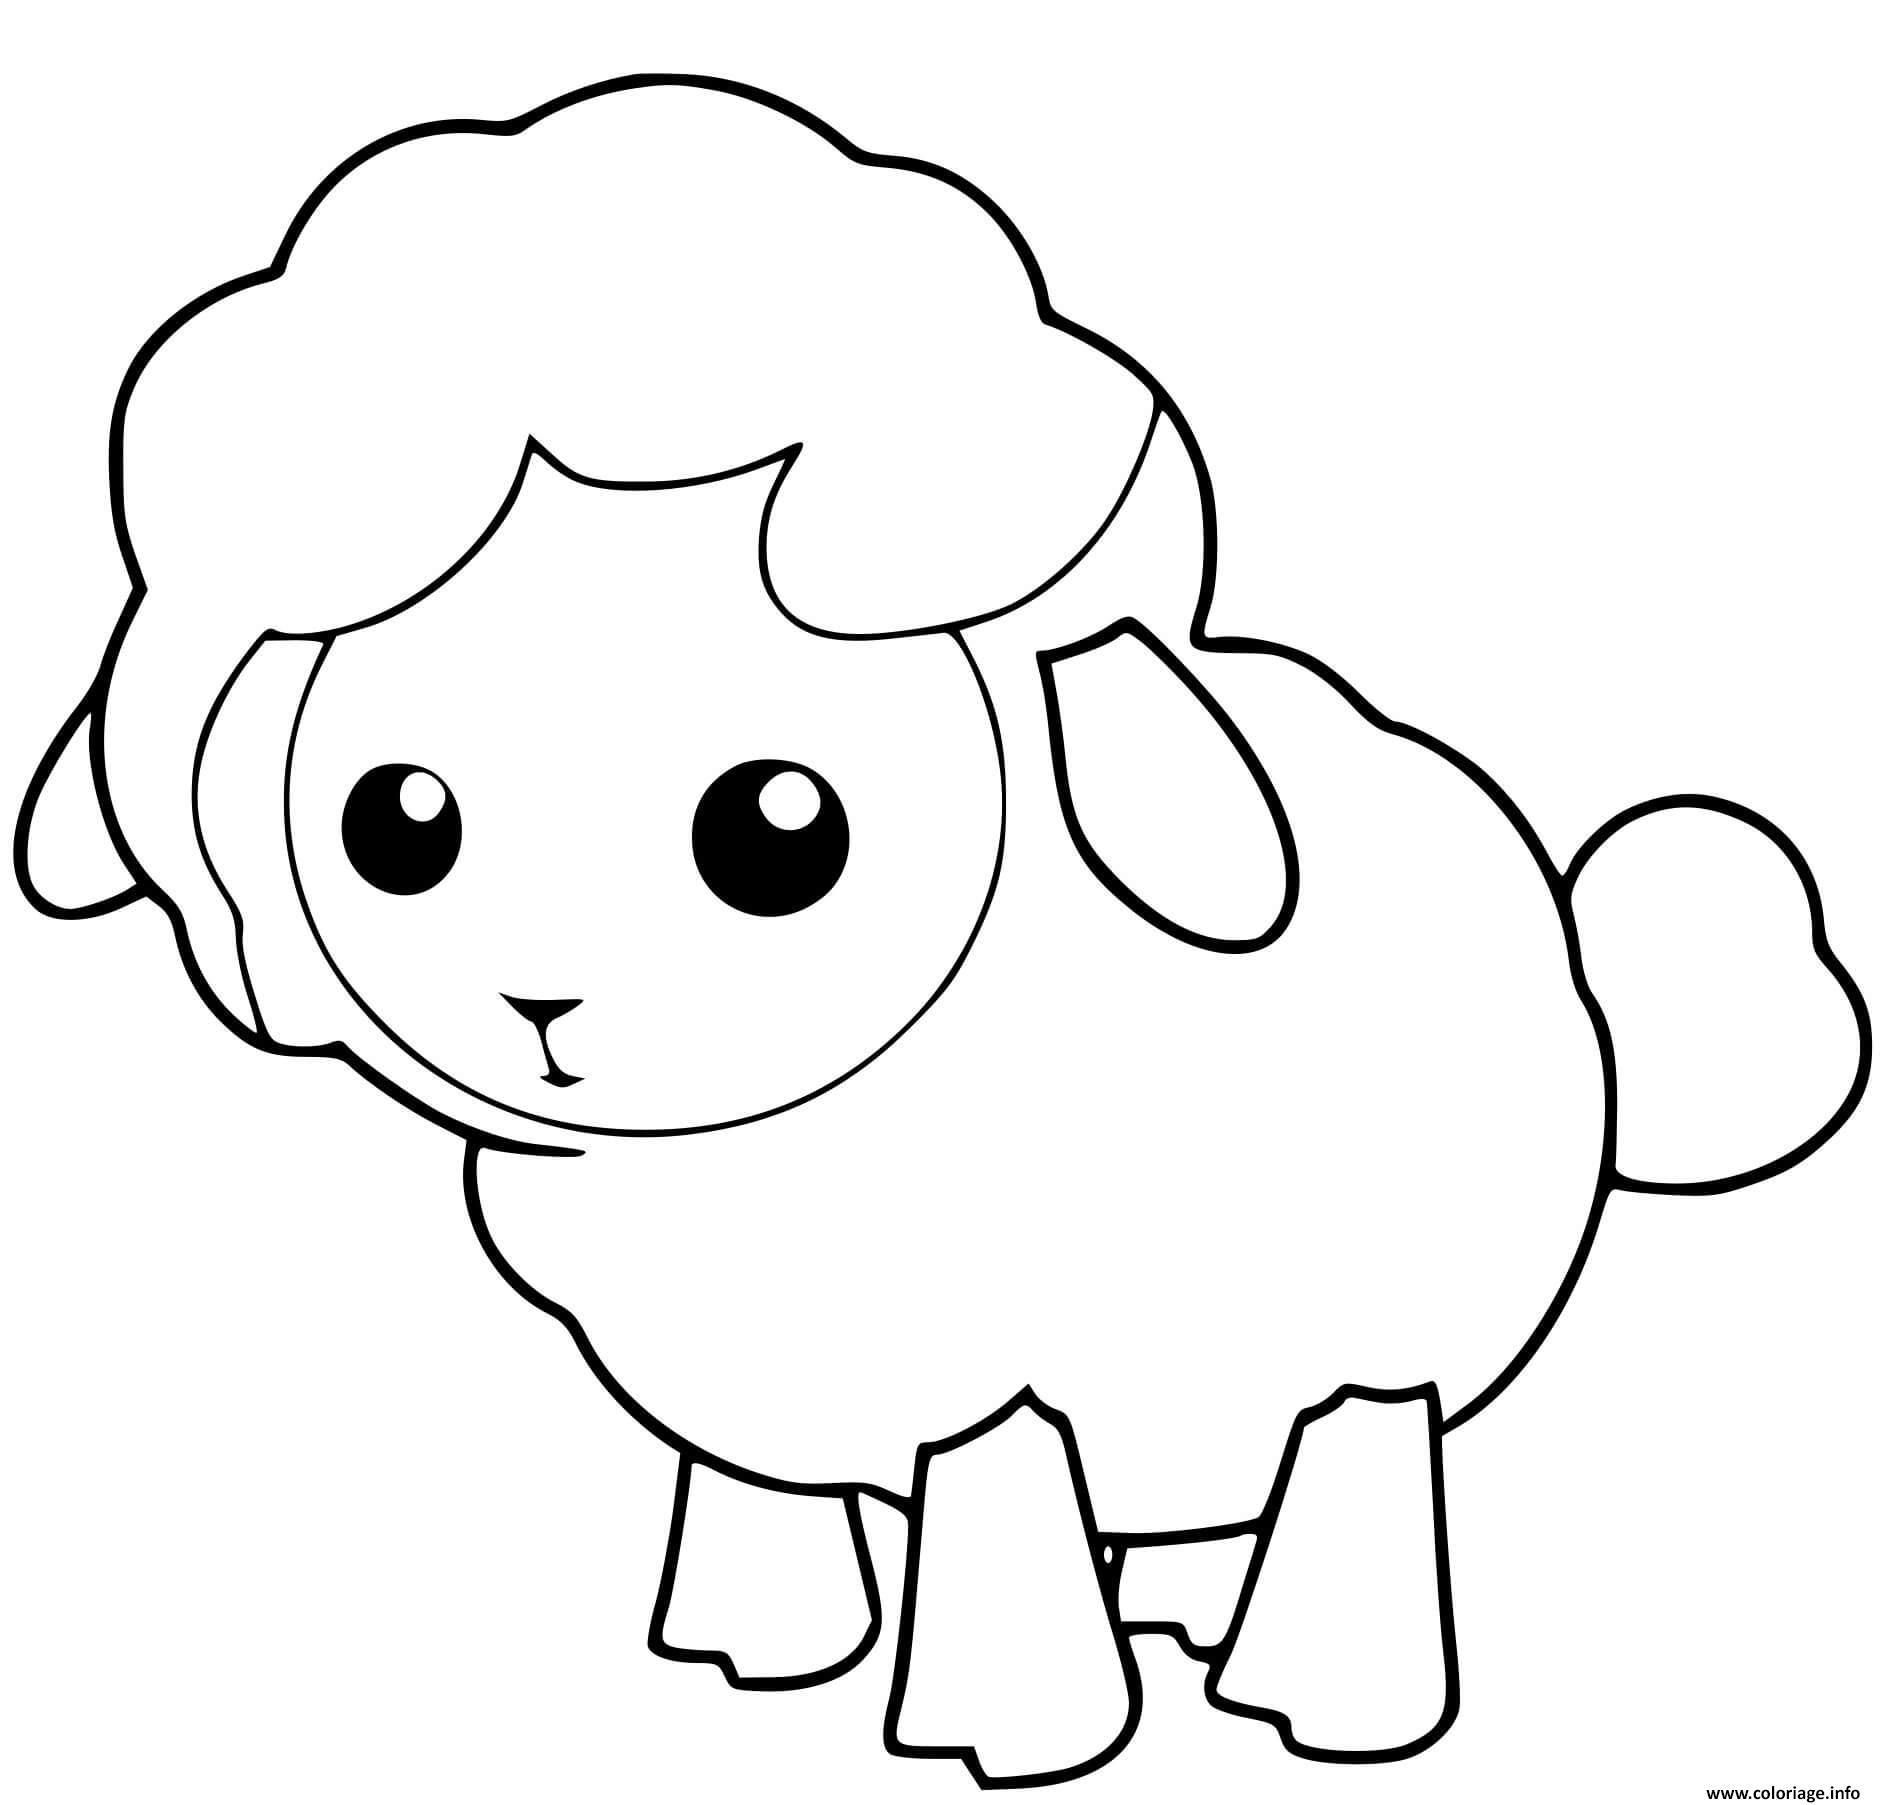 Dessin mouton agneau petit facile Coloriage Gratuit à Imprimer